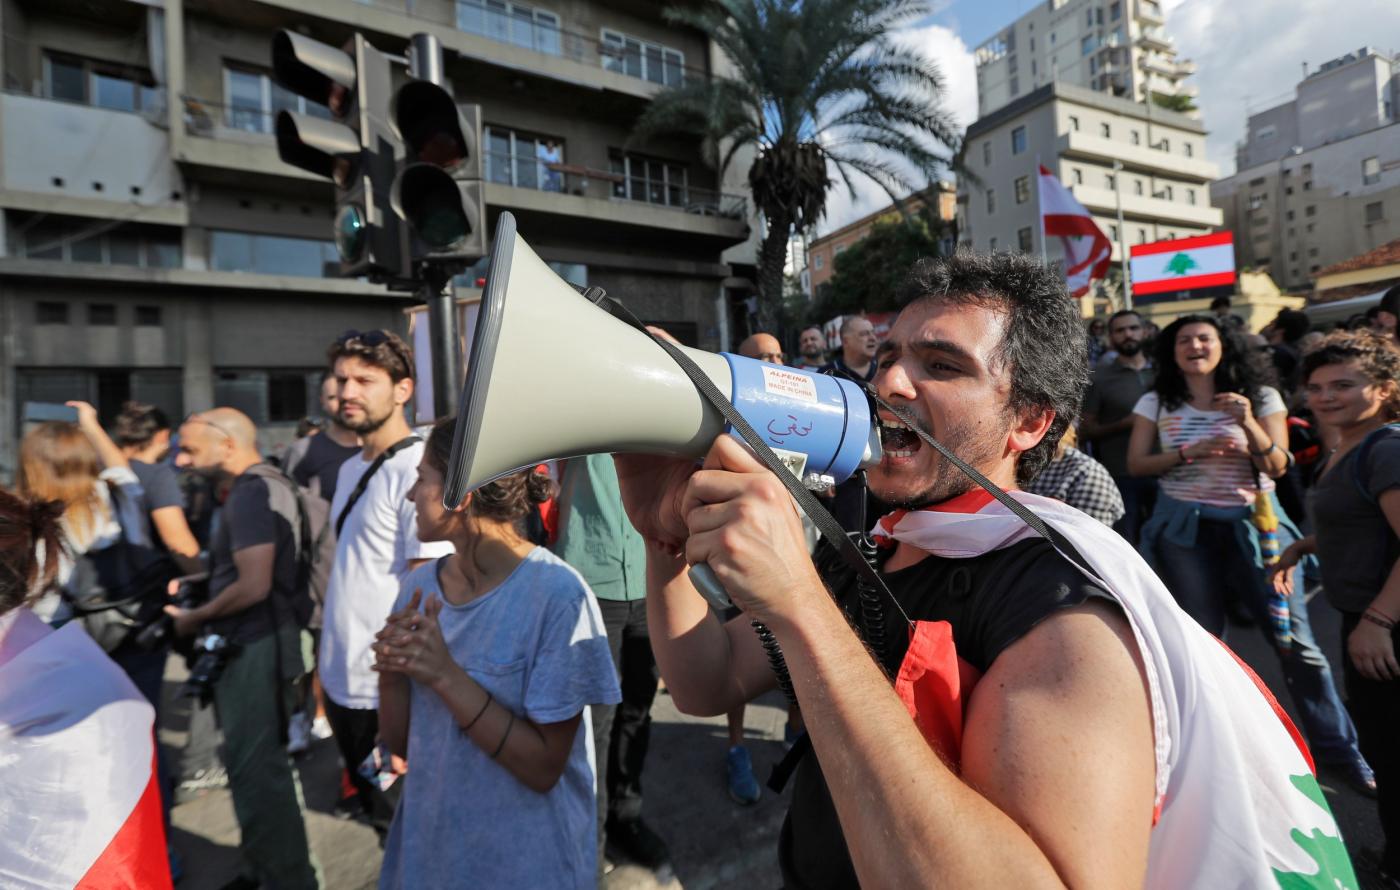 Des manifestants anti-gouvernementaux crient des slogans appelant à la réforme lors d’un rassemblement dans le centre de Beyrouth, le 29 octobre 2019 (AFP)